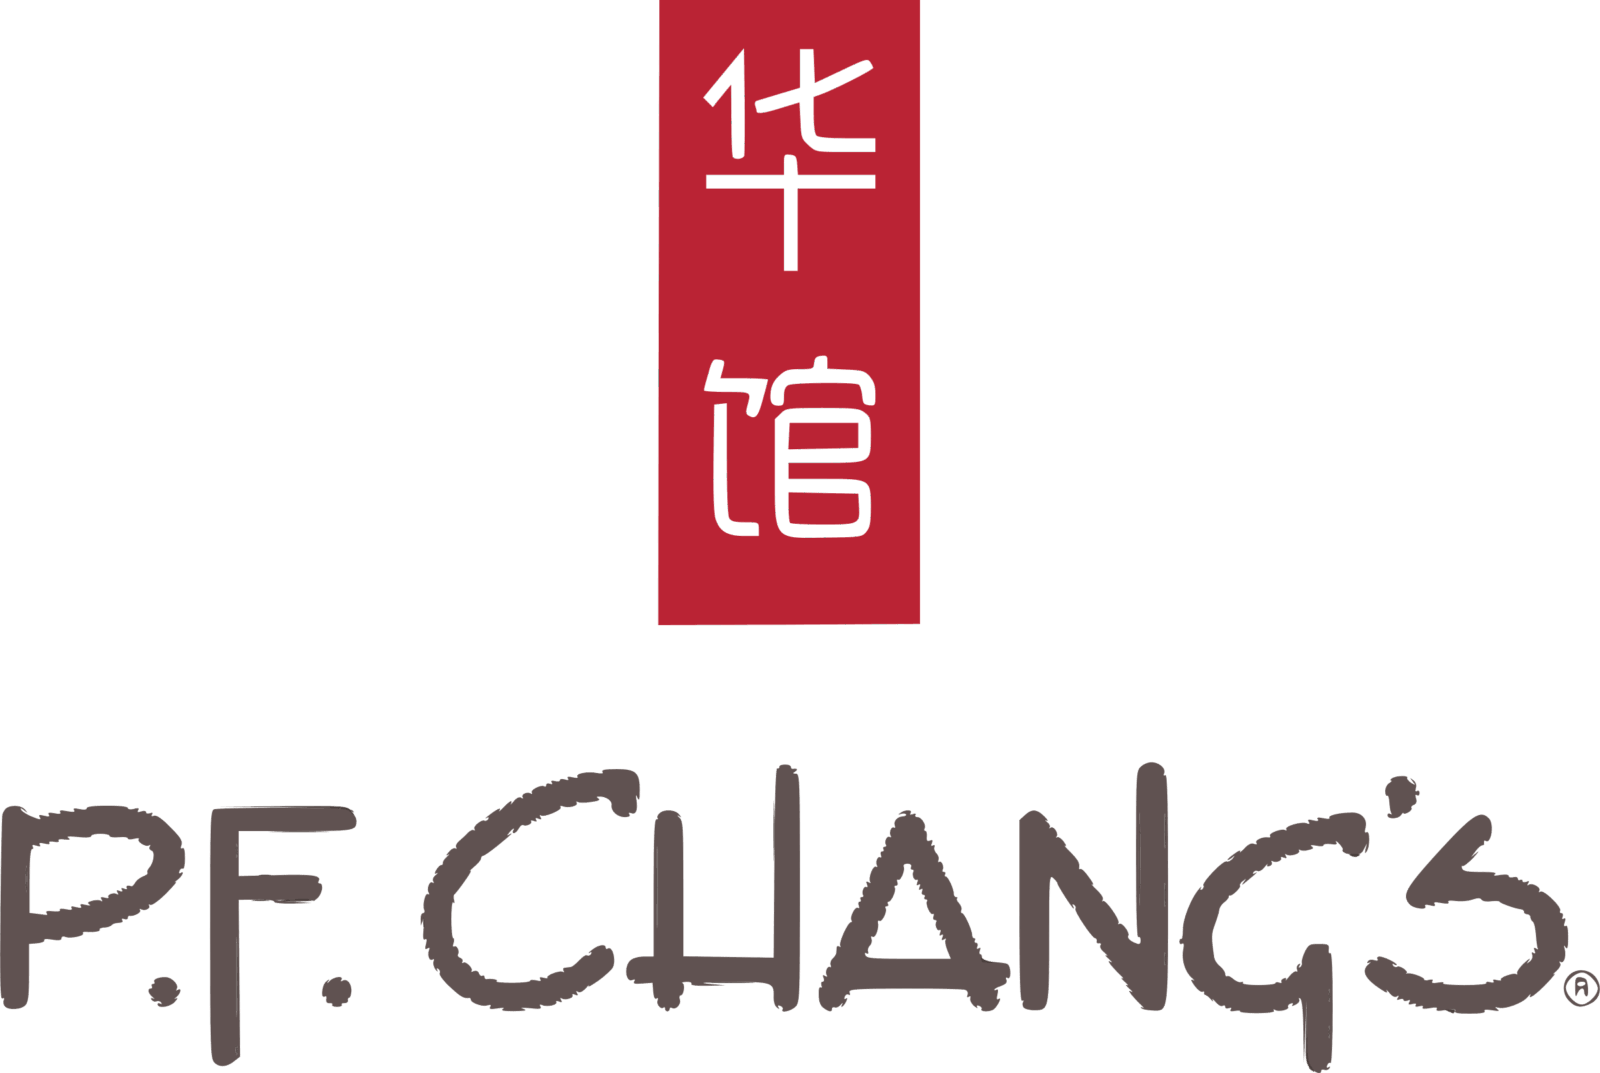 PF Changs Logo